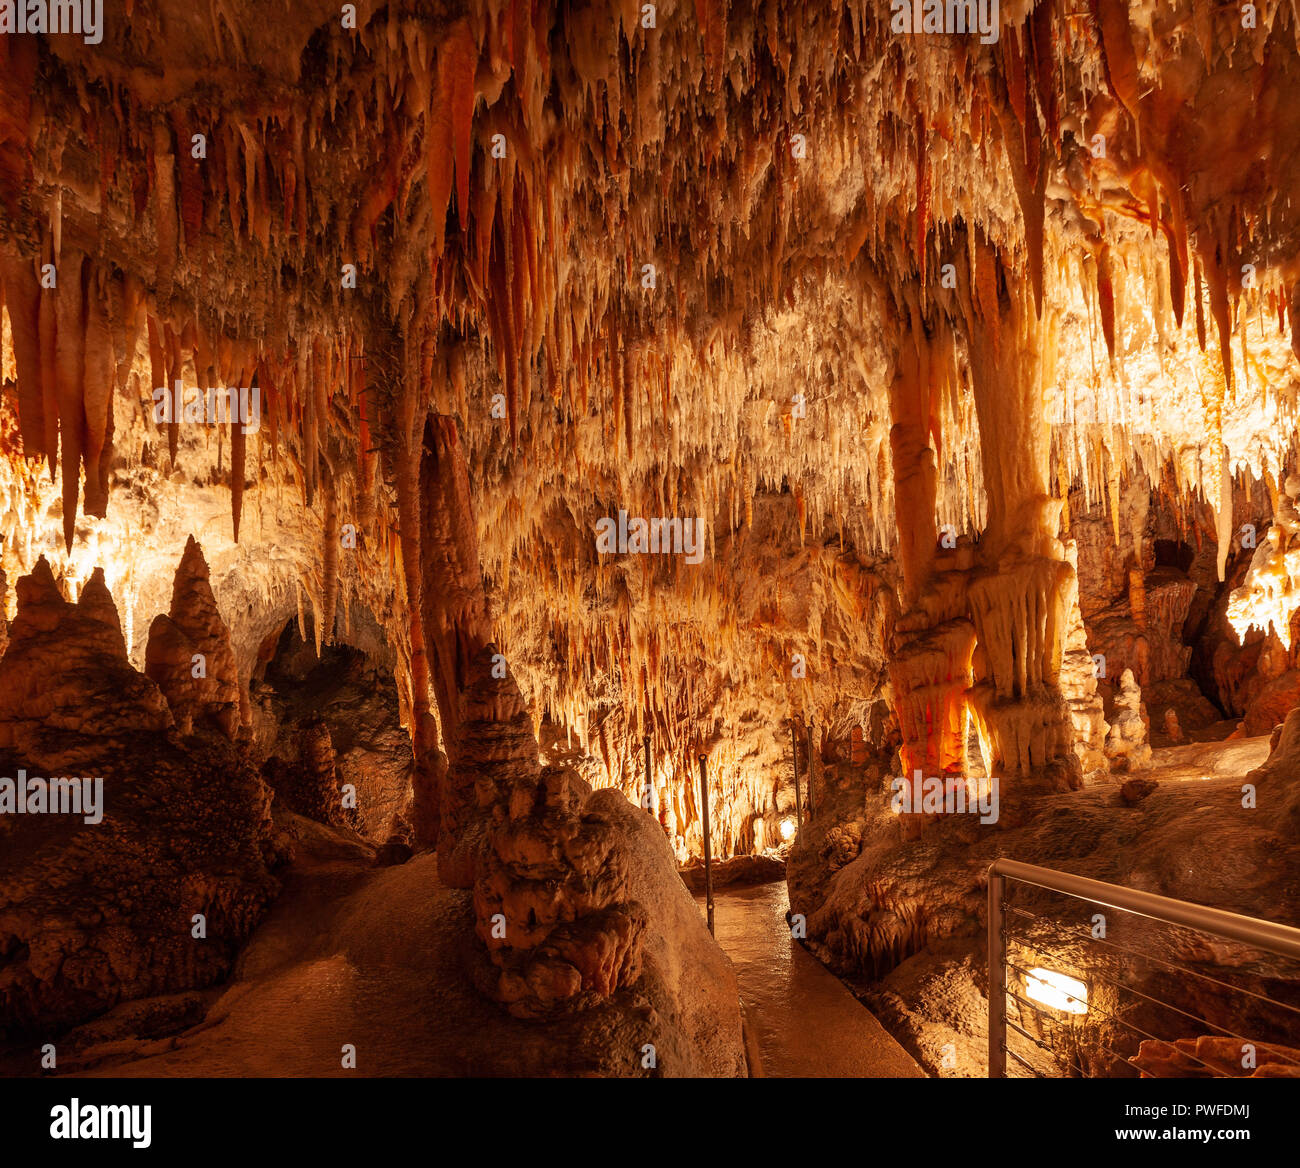 Percorso a piedi in una grotta di pietra calcarea tra bellissime stalattiti e stalagmiti. Kosciuszko national park, NSW, Australia Foto Stock